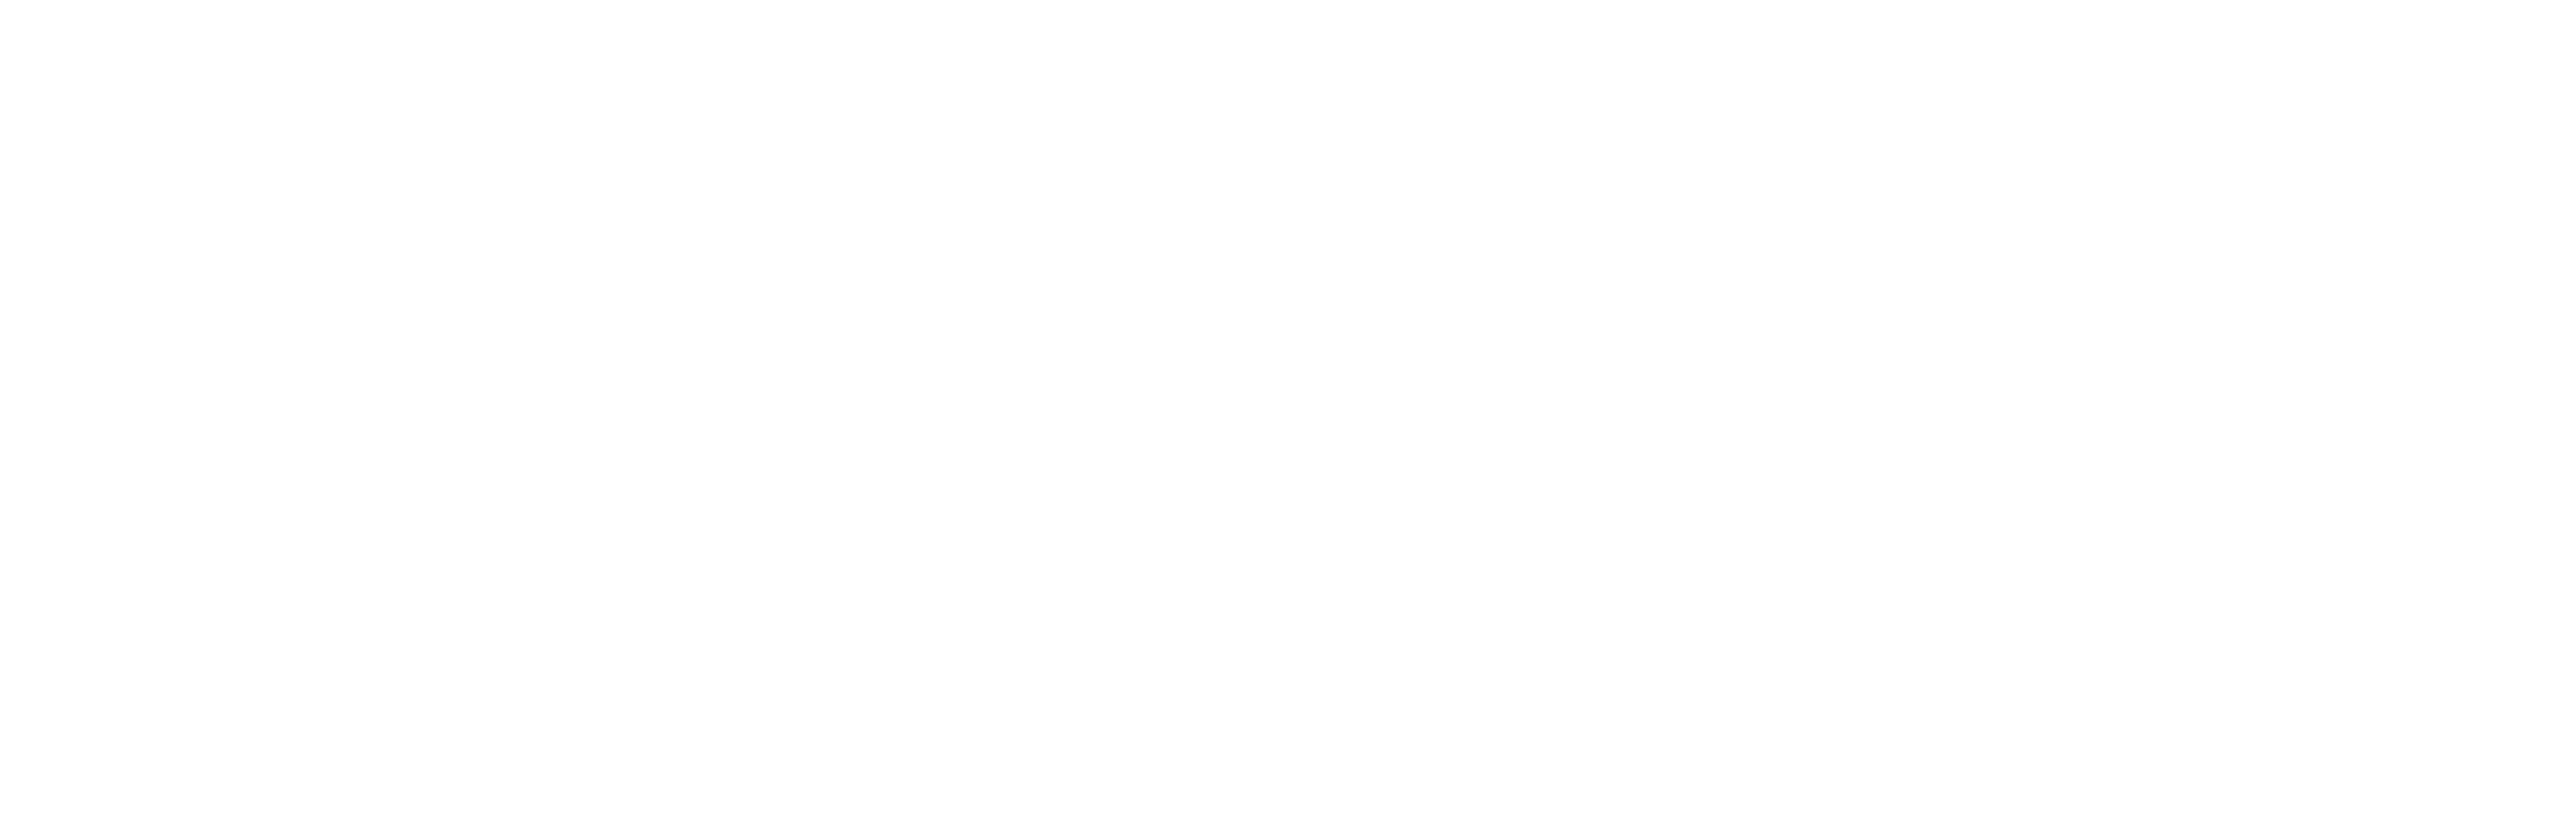 bonito itinerary travel agency in bonito